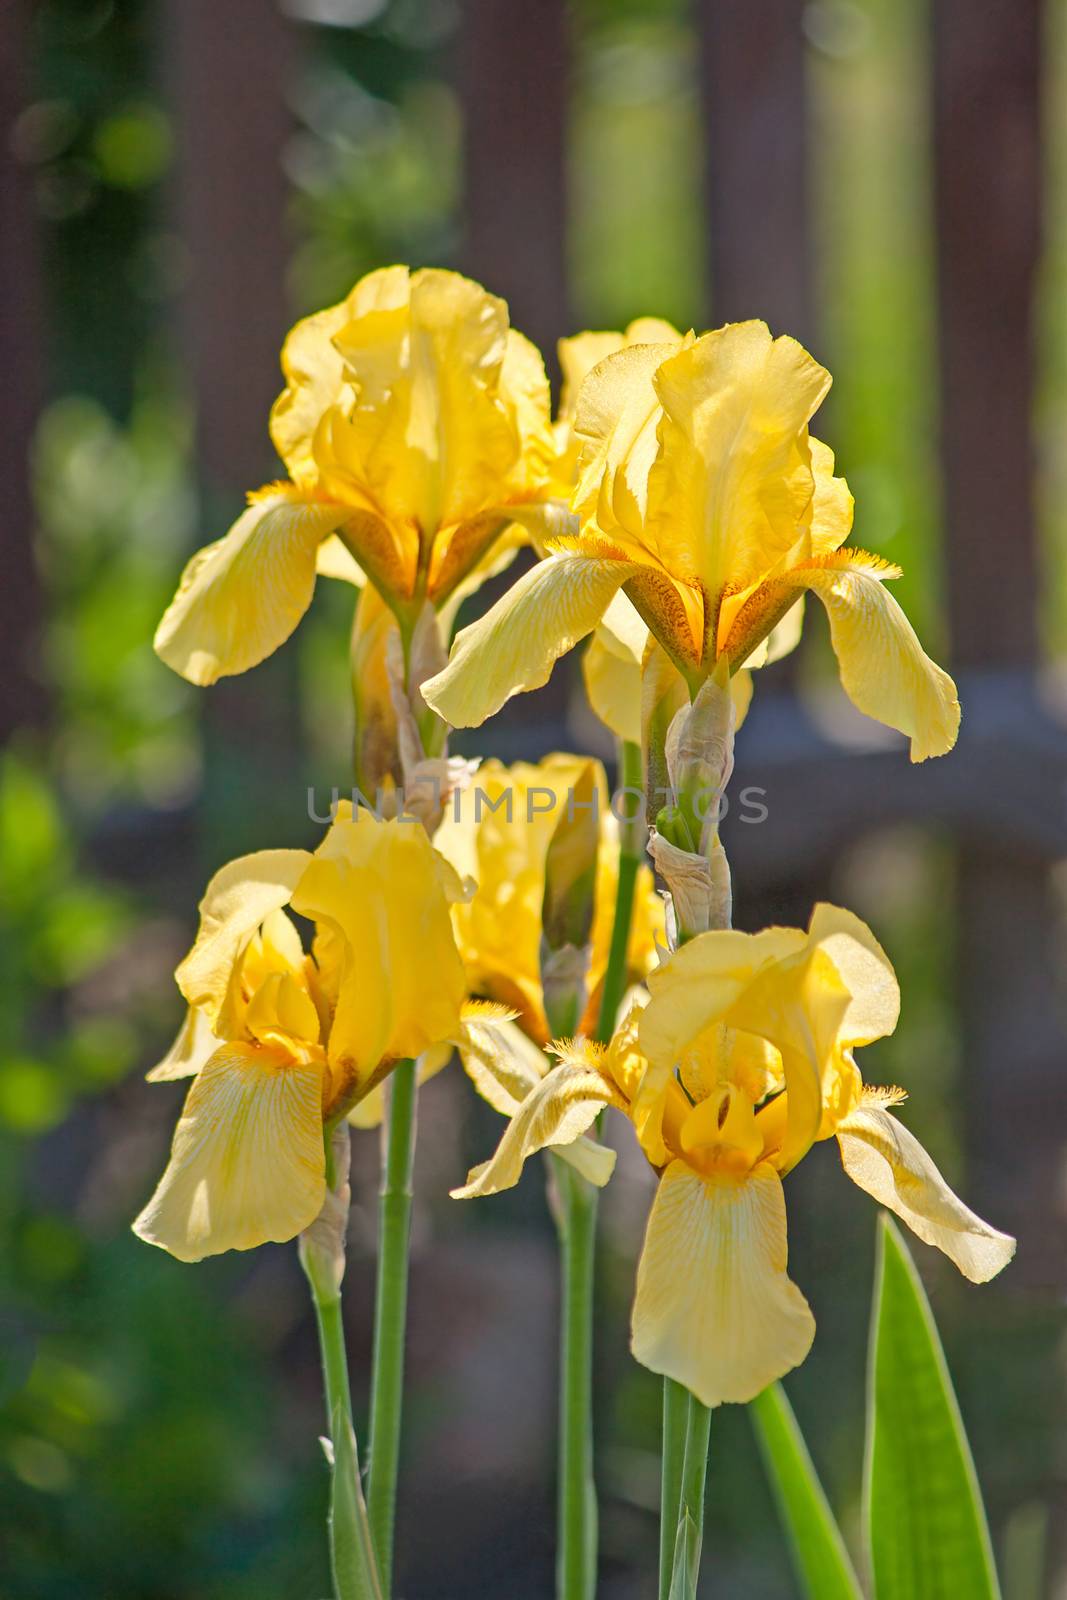 yellow irises in the sunlight by zhannaprokopeva